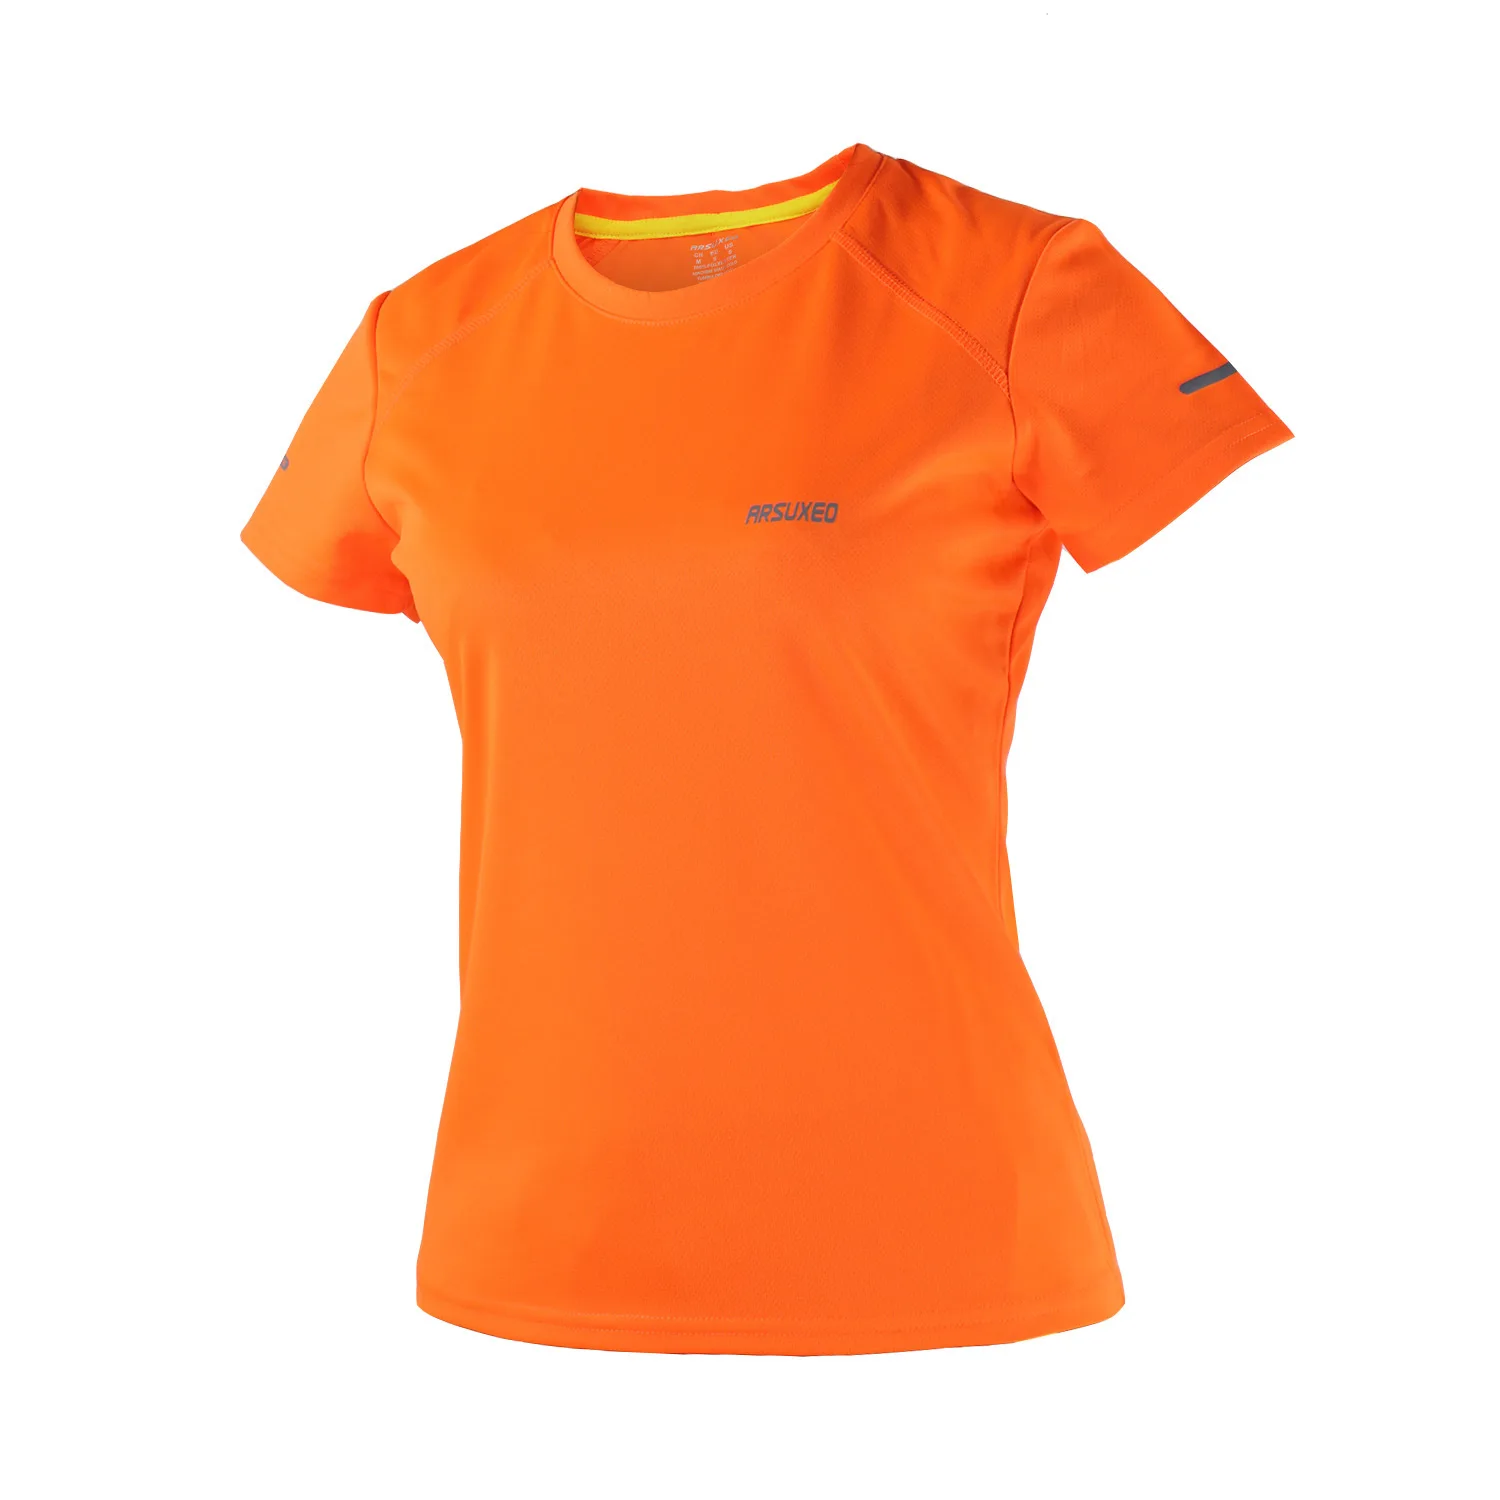 ARSUXEO, женская футболка для спортзала, короткий рукав, сухая посадка, Спортивная футболка, спортивный костюм для спортзала, футболка для фитнеса, одежда для бега, Джерси, спортивная одежда - Цвет: Оранжевый